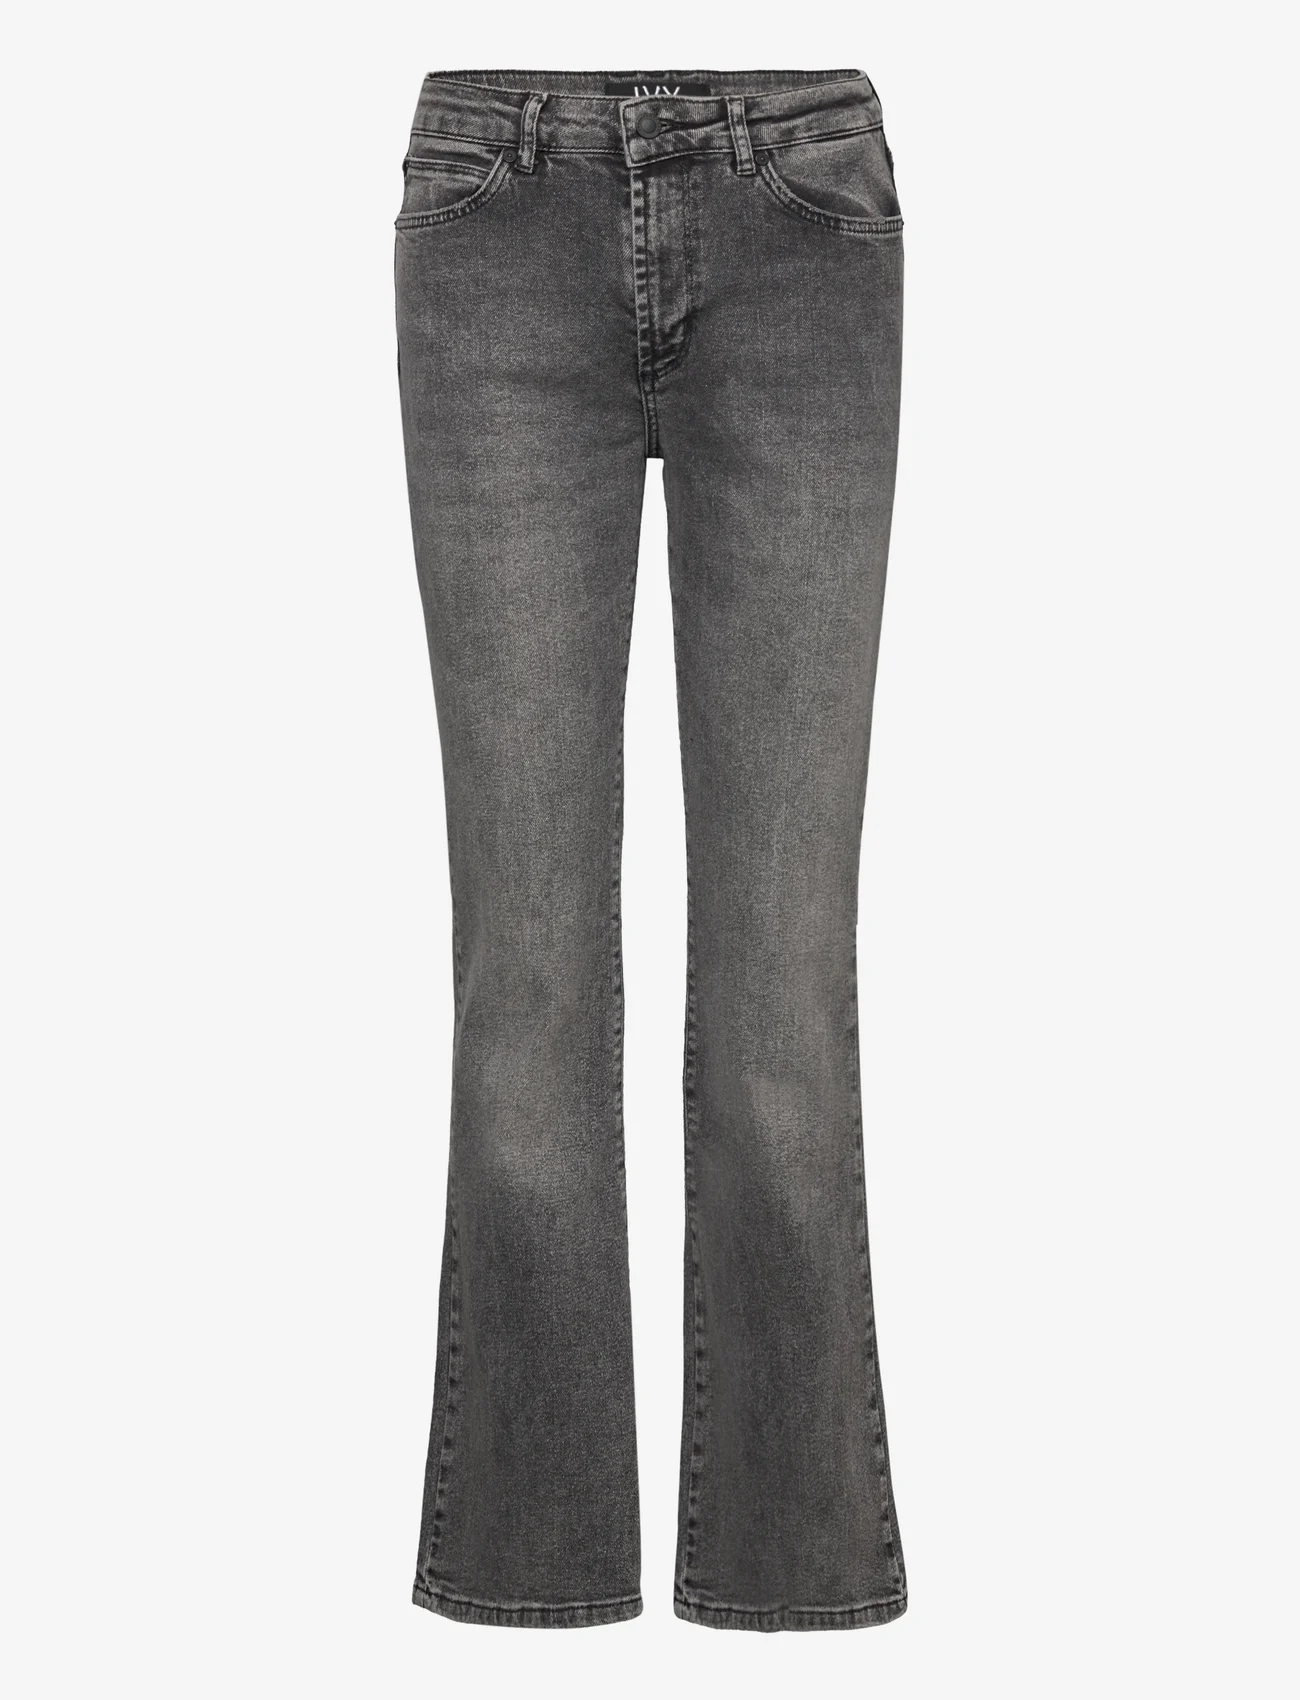 IVY Copenhagen - IVY-Tara Jeans Wash Rockstar Grey - schlaghosen - grey - 0